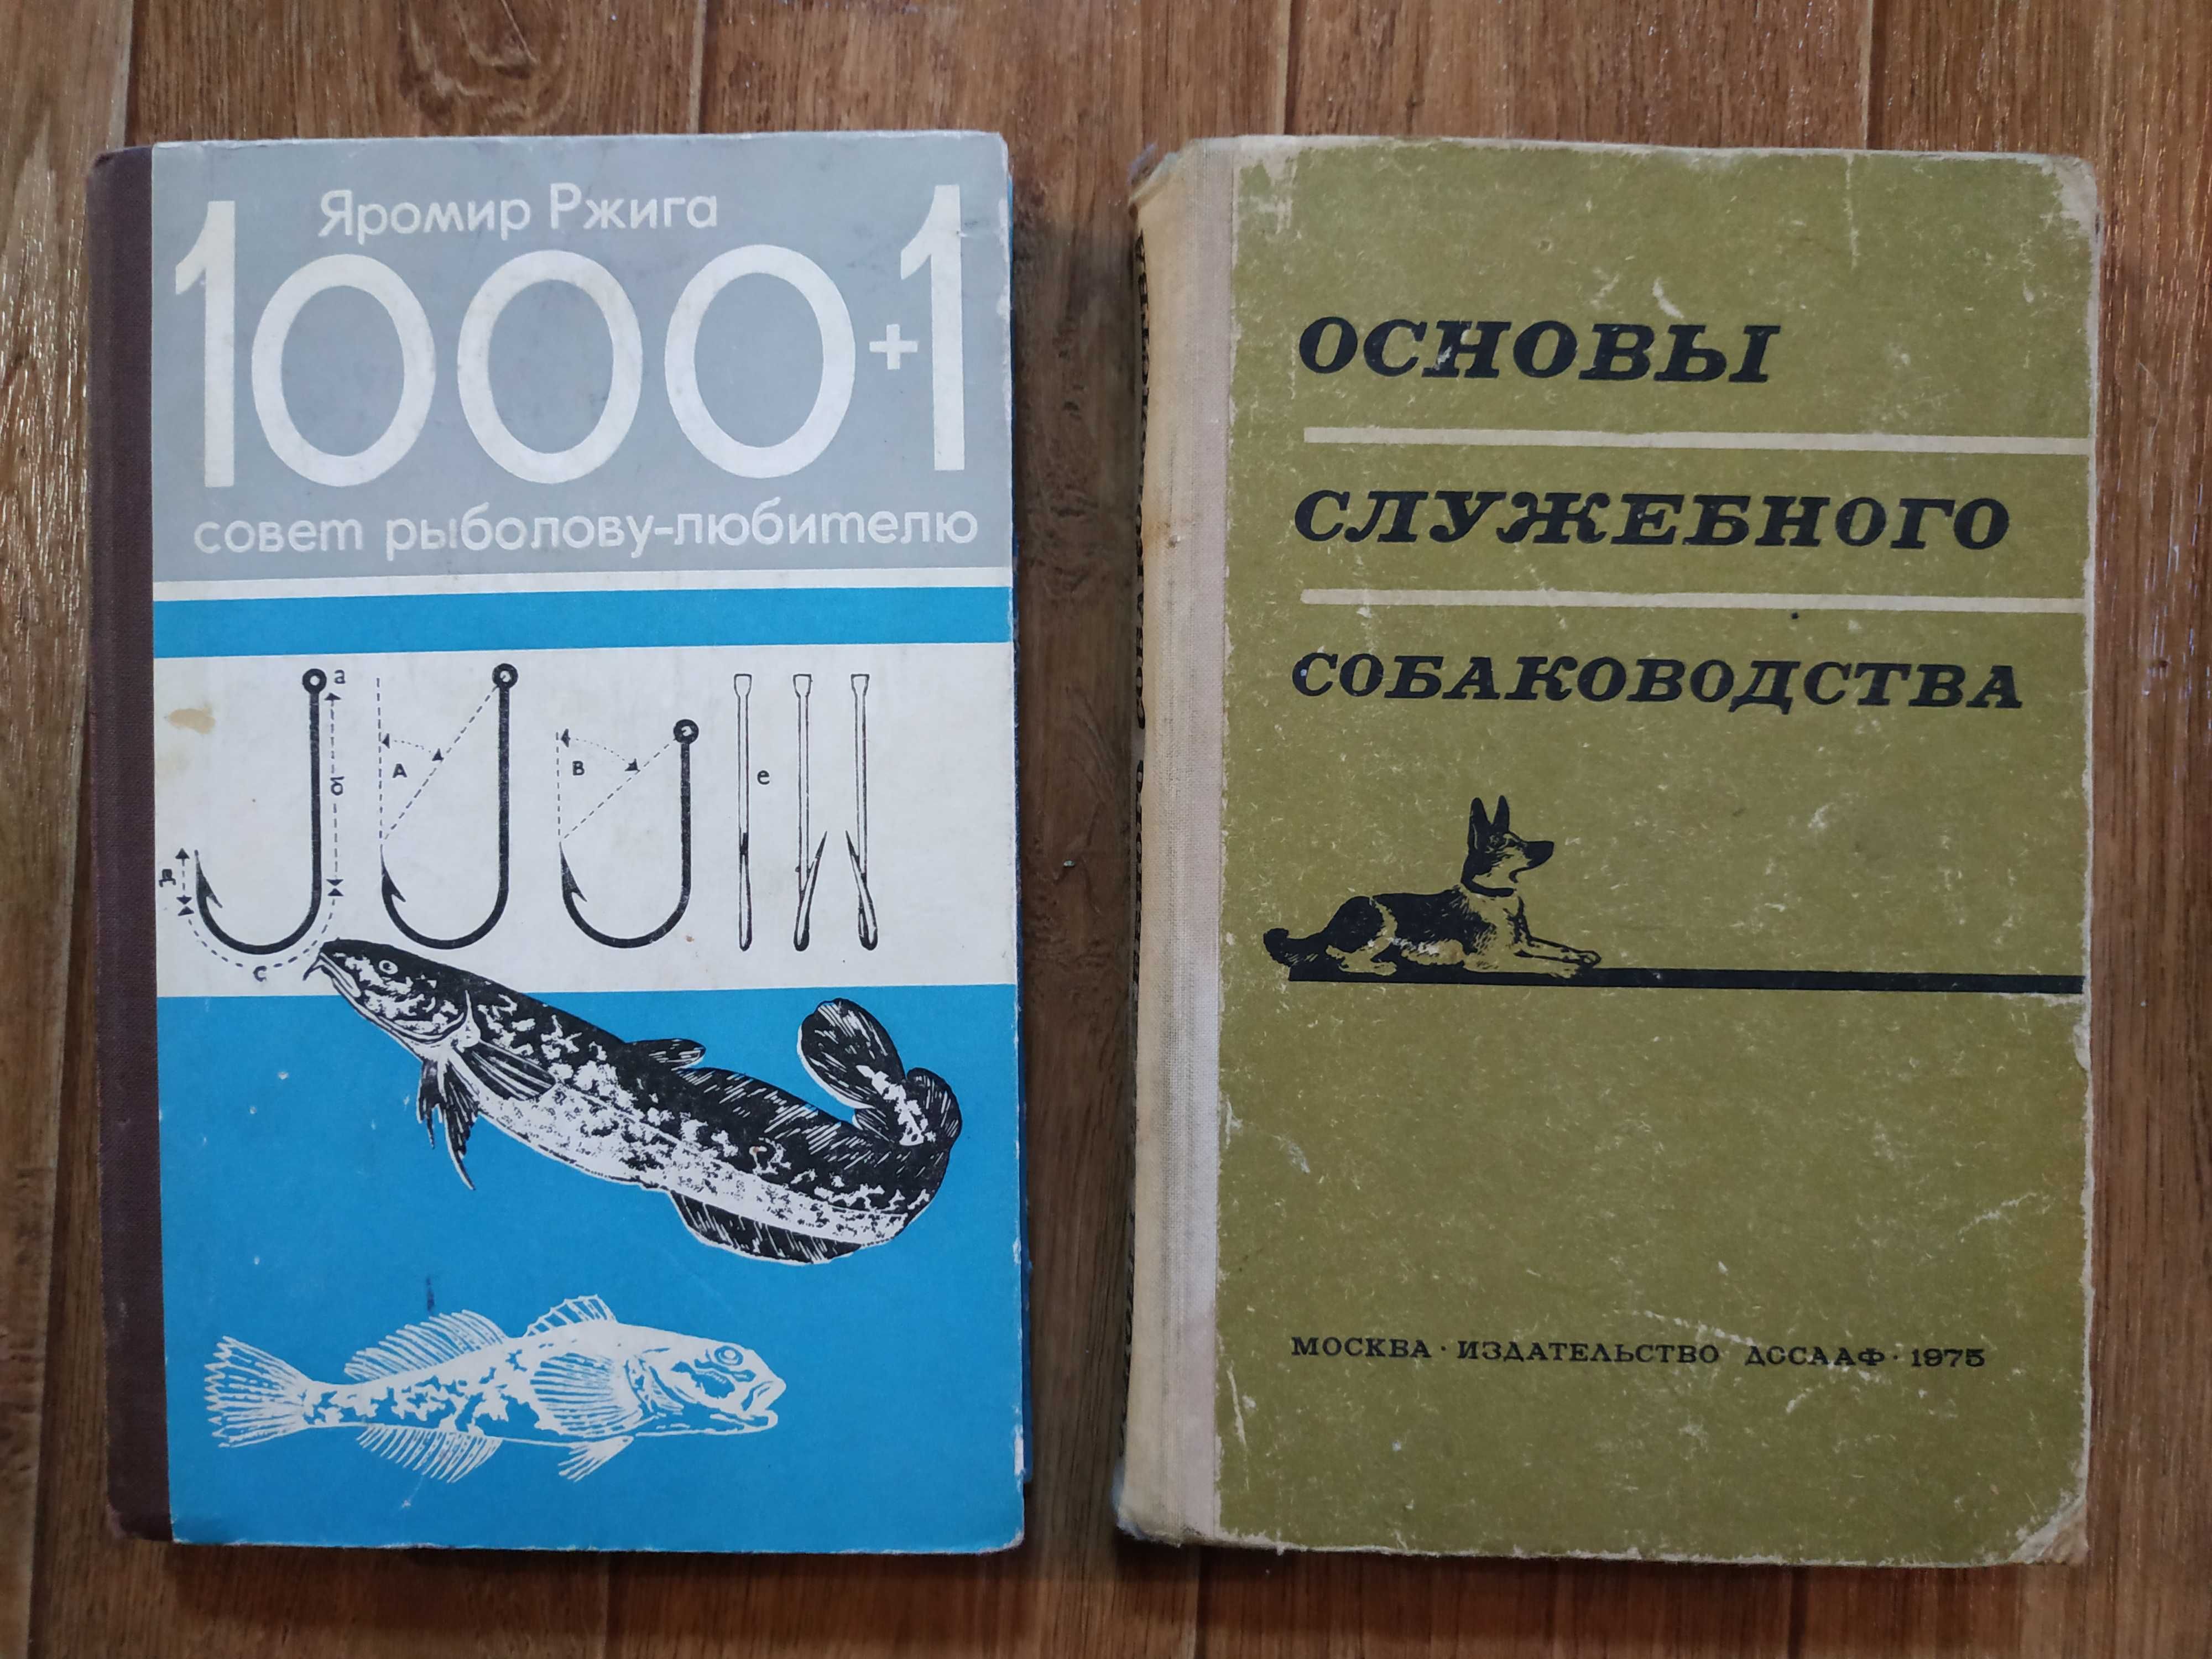 Книги редкие по рыболовству и служебному собаководству.